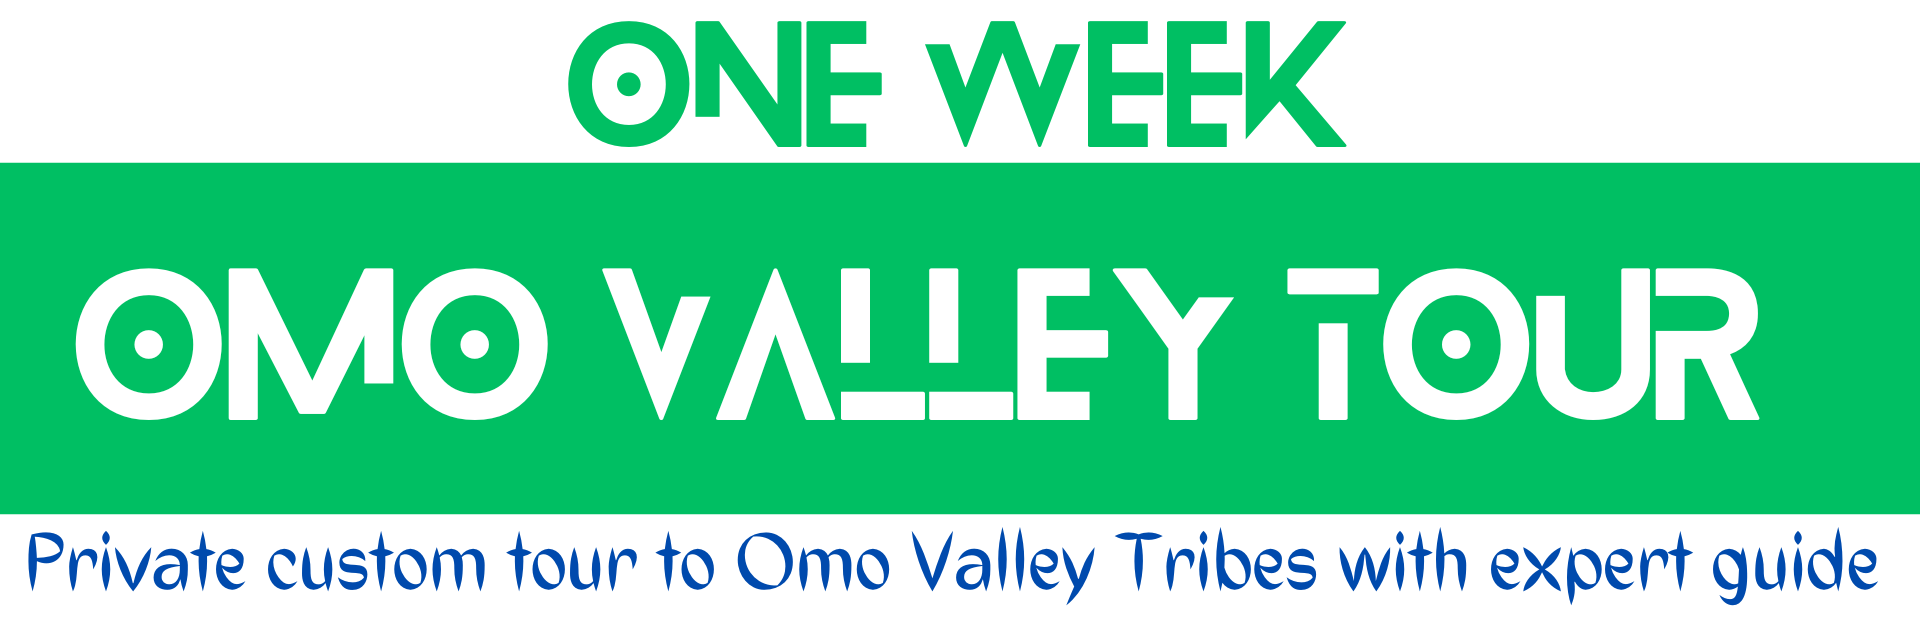 Omo Valley Tour Header